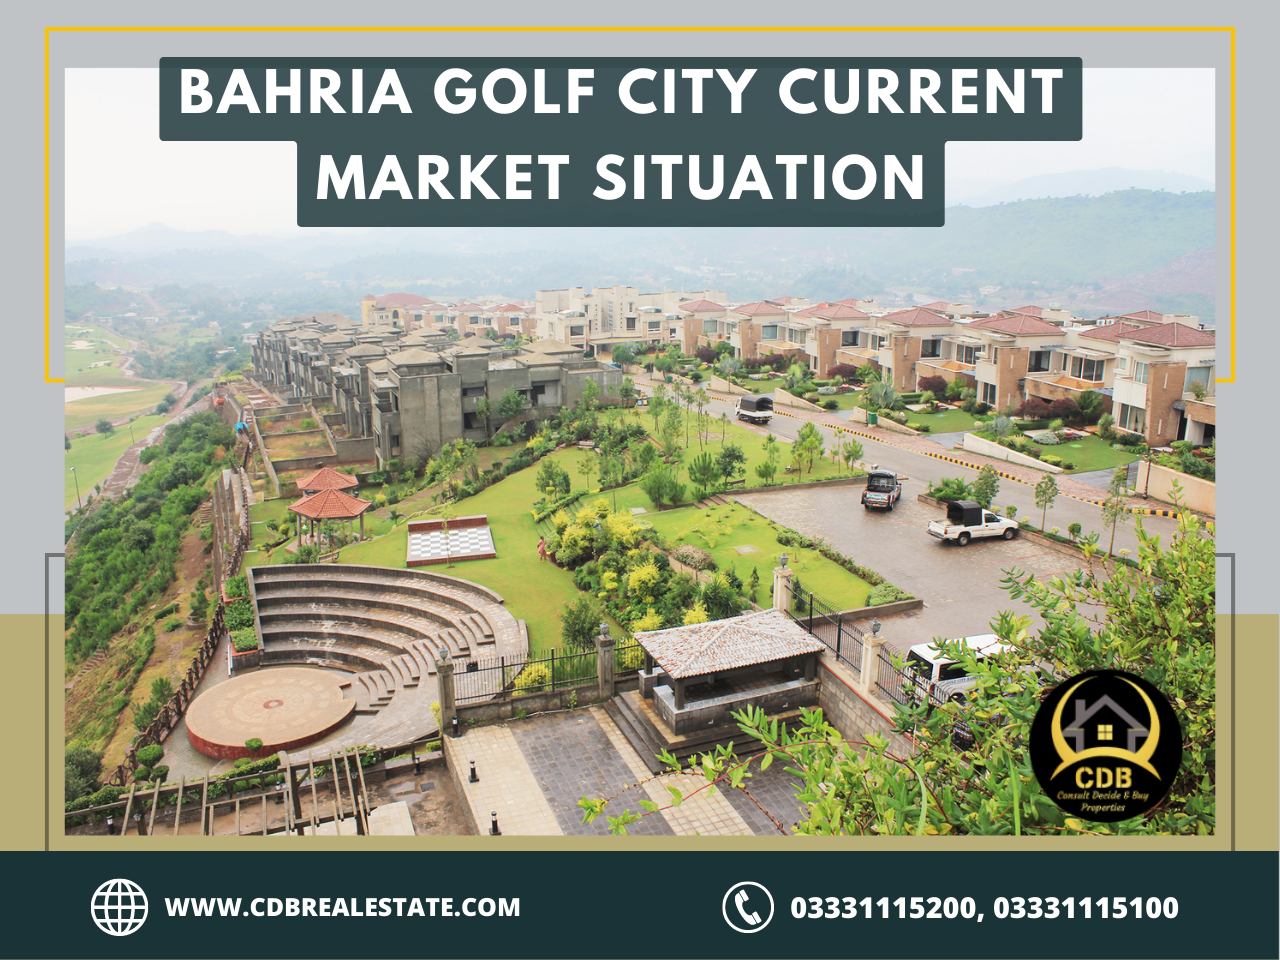 Bahria Golf City